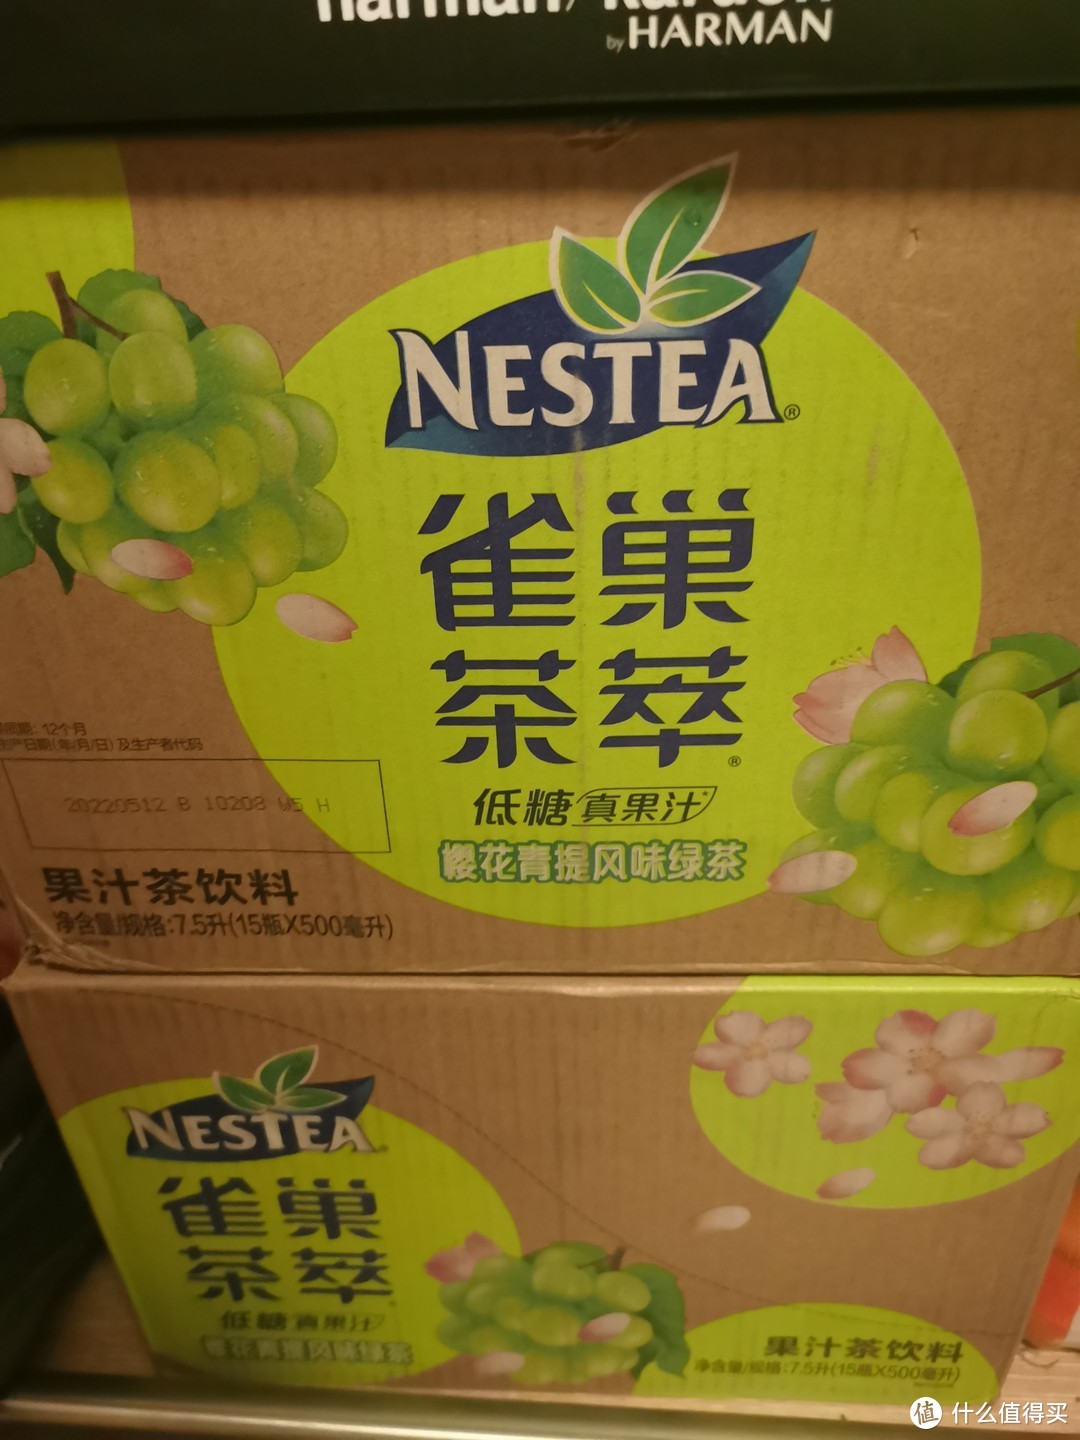 春天的味道：雀巢樱花青提风味绿茶